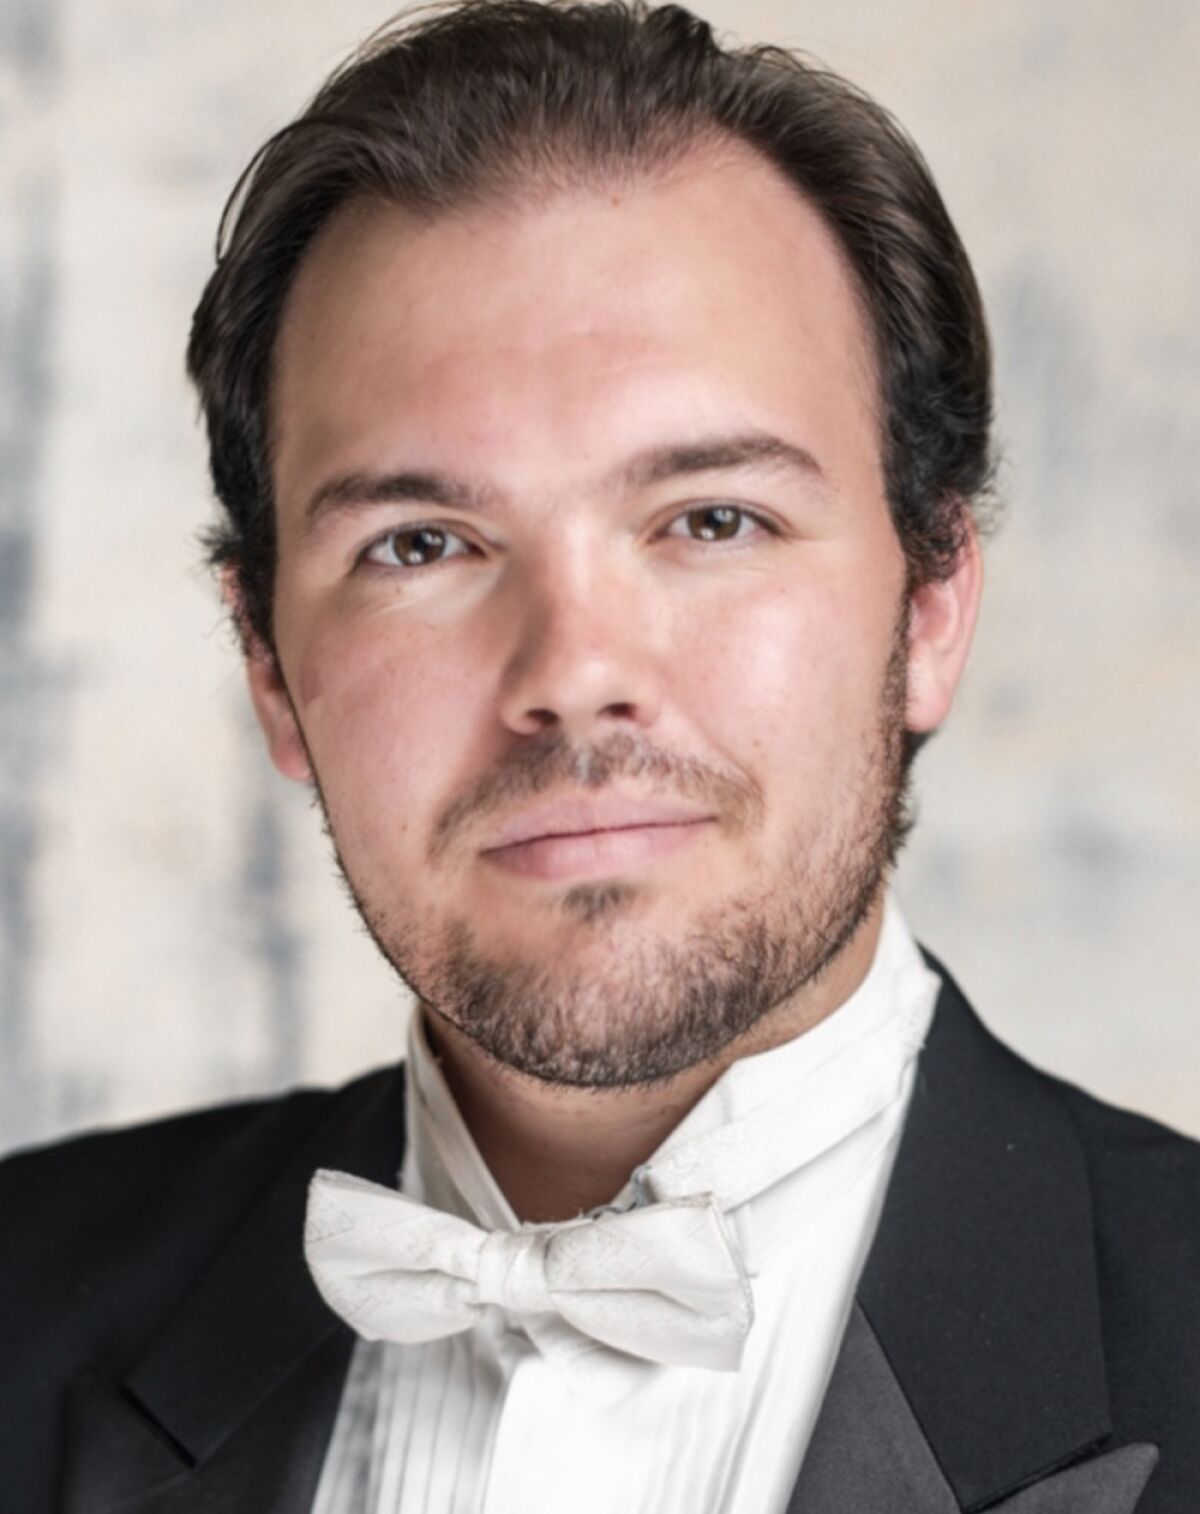 El tenor Charles Calotta interpretará el papel principal en una producción de la Ópera Neo de Mozart "metridatos"